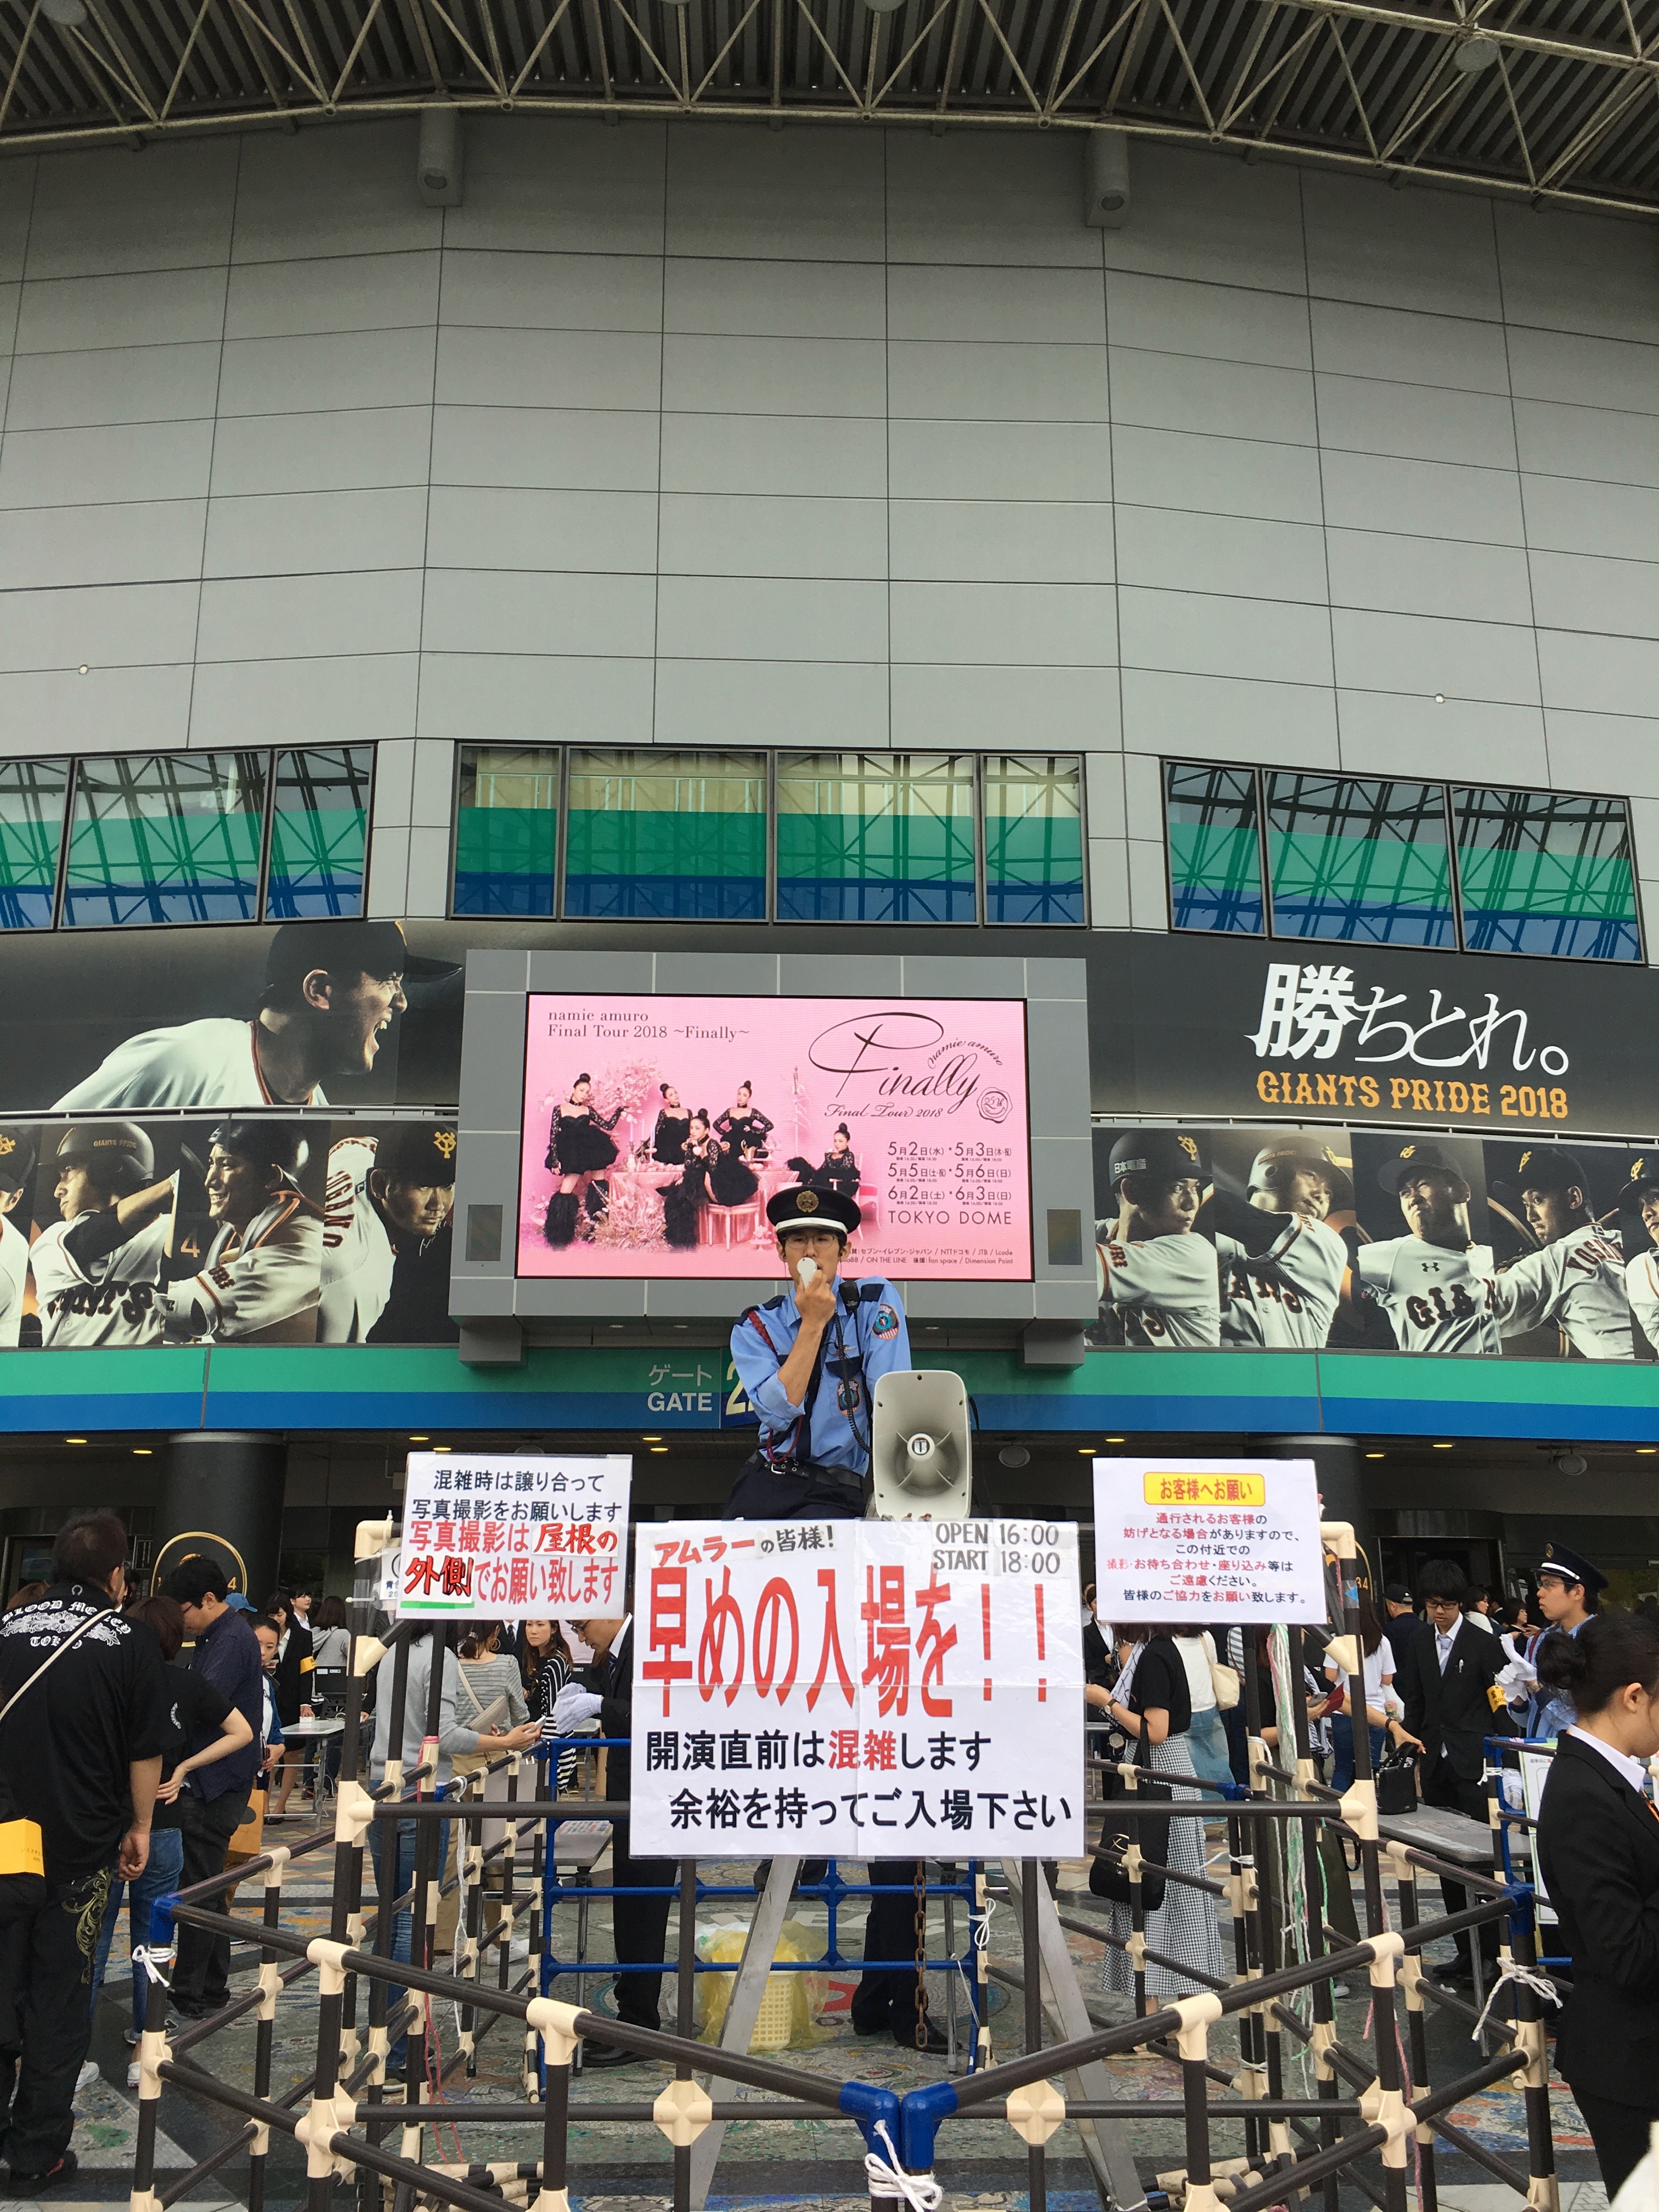 ありがとう、安室ちゃん。安室奈美恵はやっぱりヒーローだった。namie amuro Final Tour in TOKYO DOME参戦